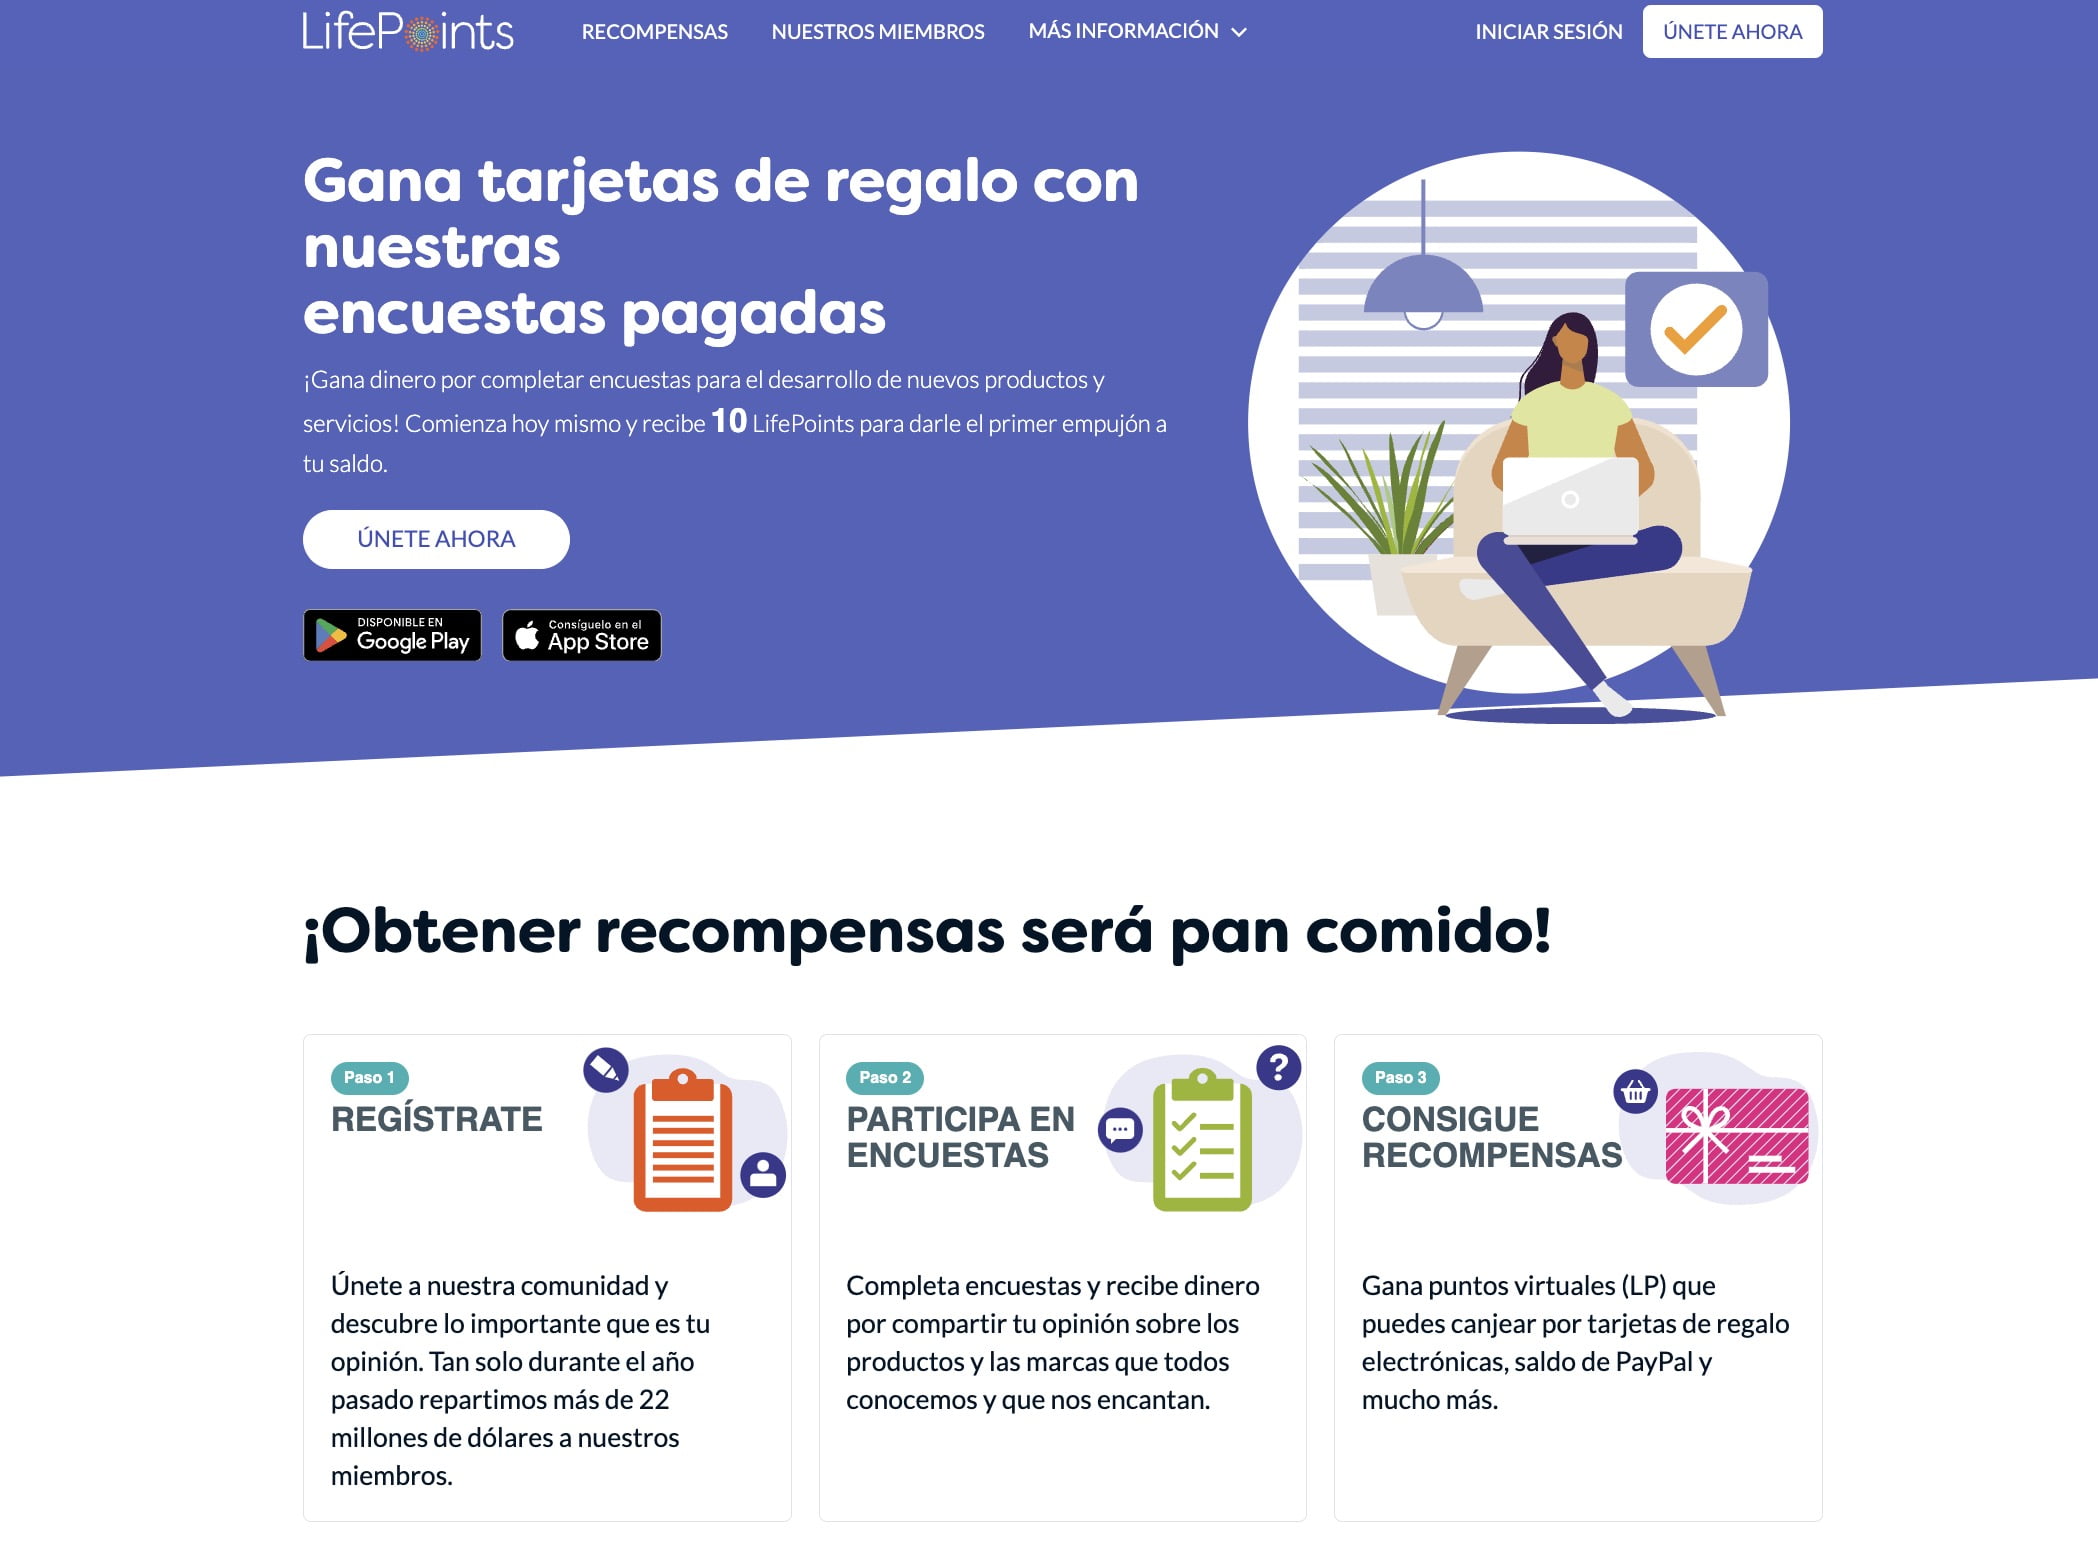 Recompensas en efectivo por completar encuestas en español